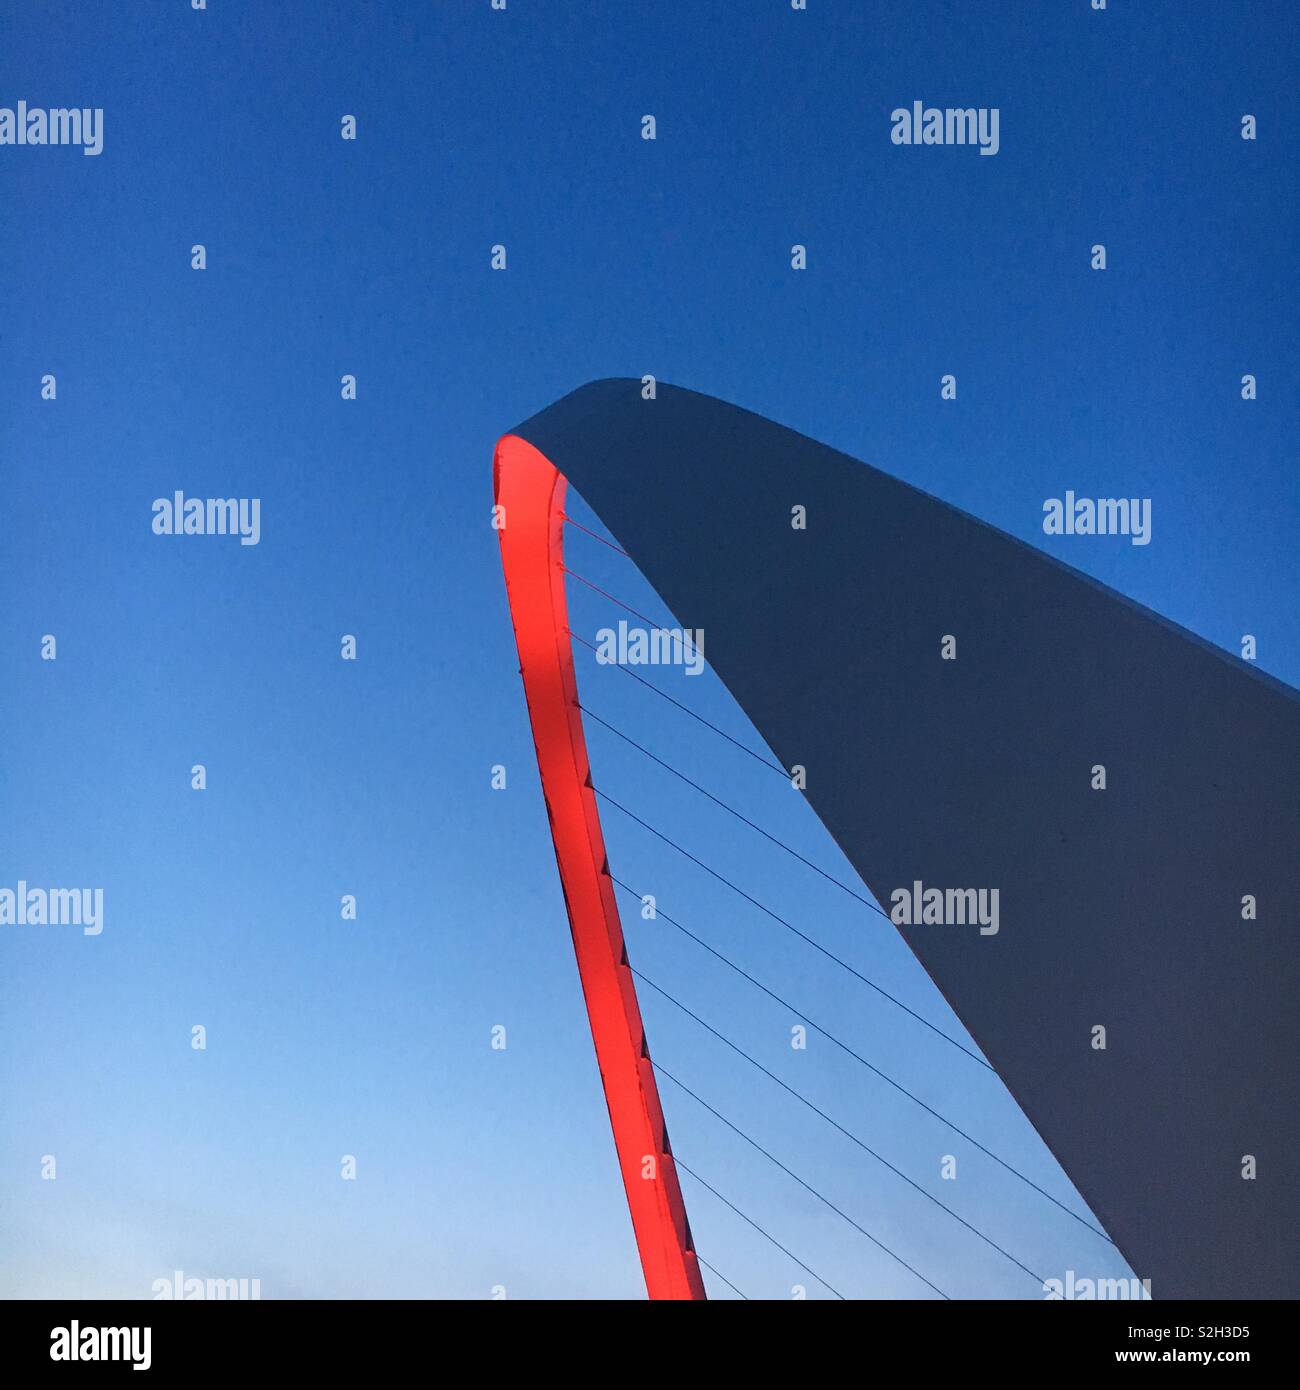 Millennium Bridge in red Stock Photo